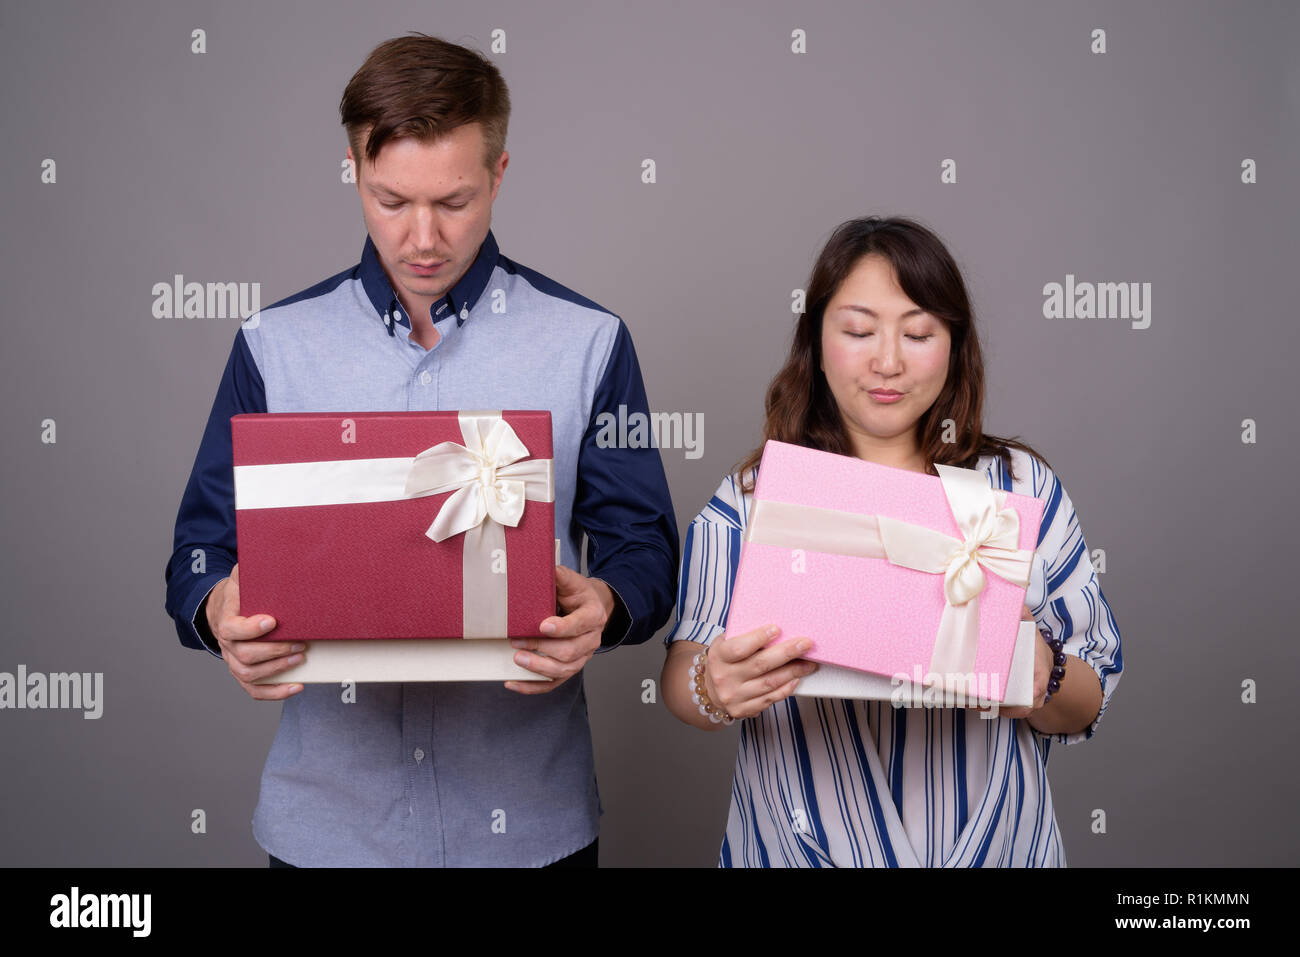 Businessman et mature Asian businesswoman holding gift box Banque D'Images